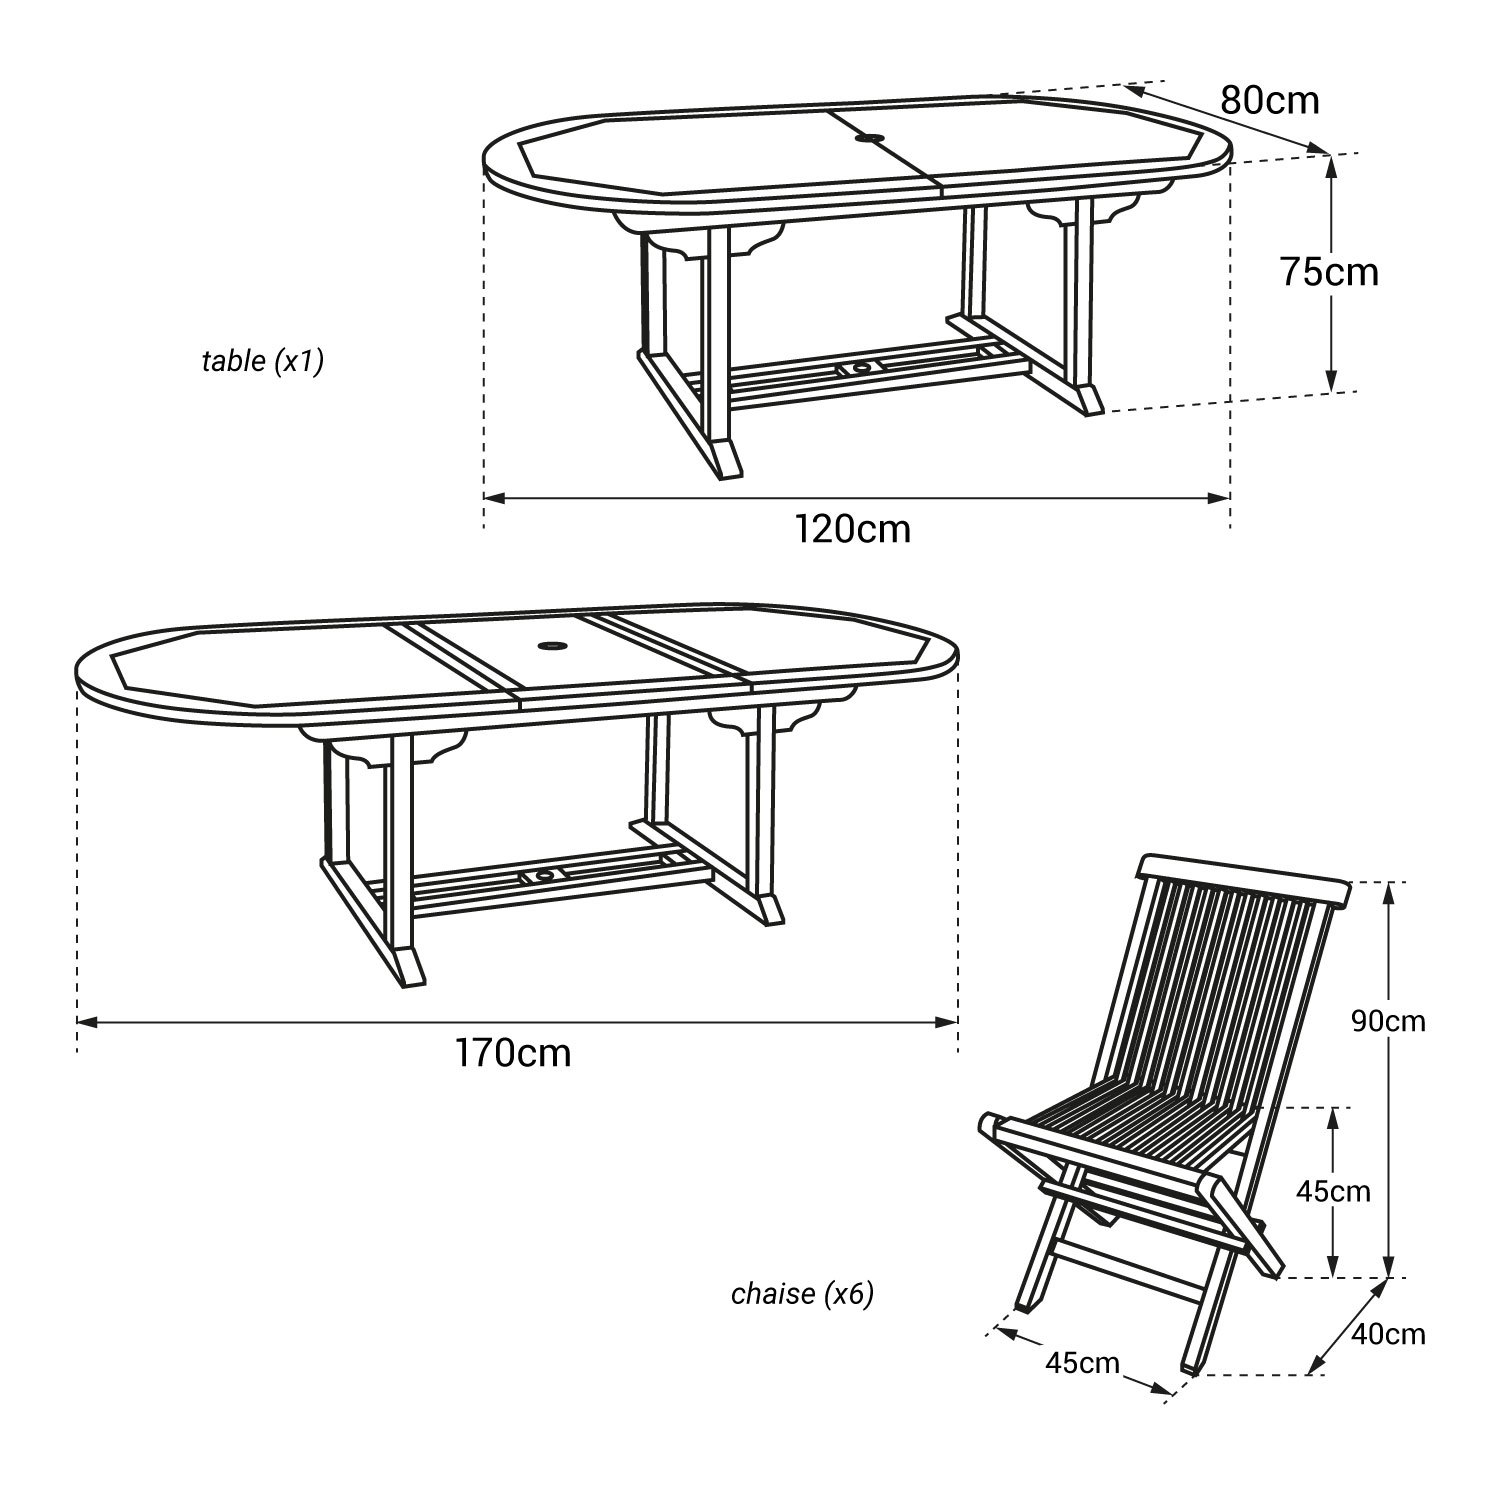 Teak tuinmeubelen LOMBOK - ovale uitschuifbare tafel - 6 zitplaatsen